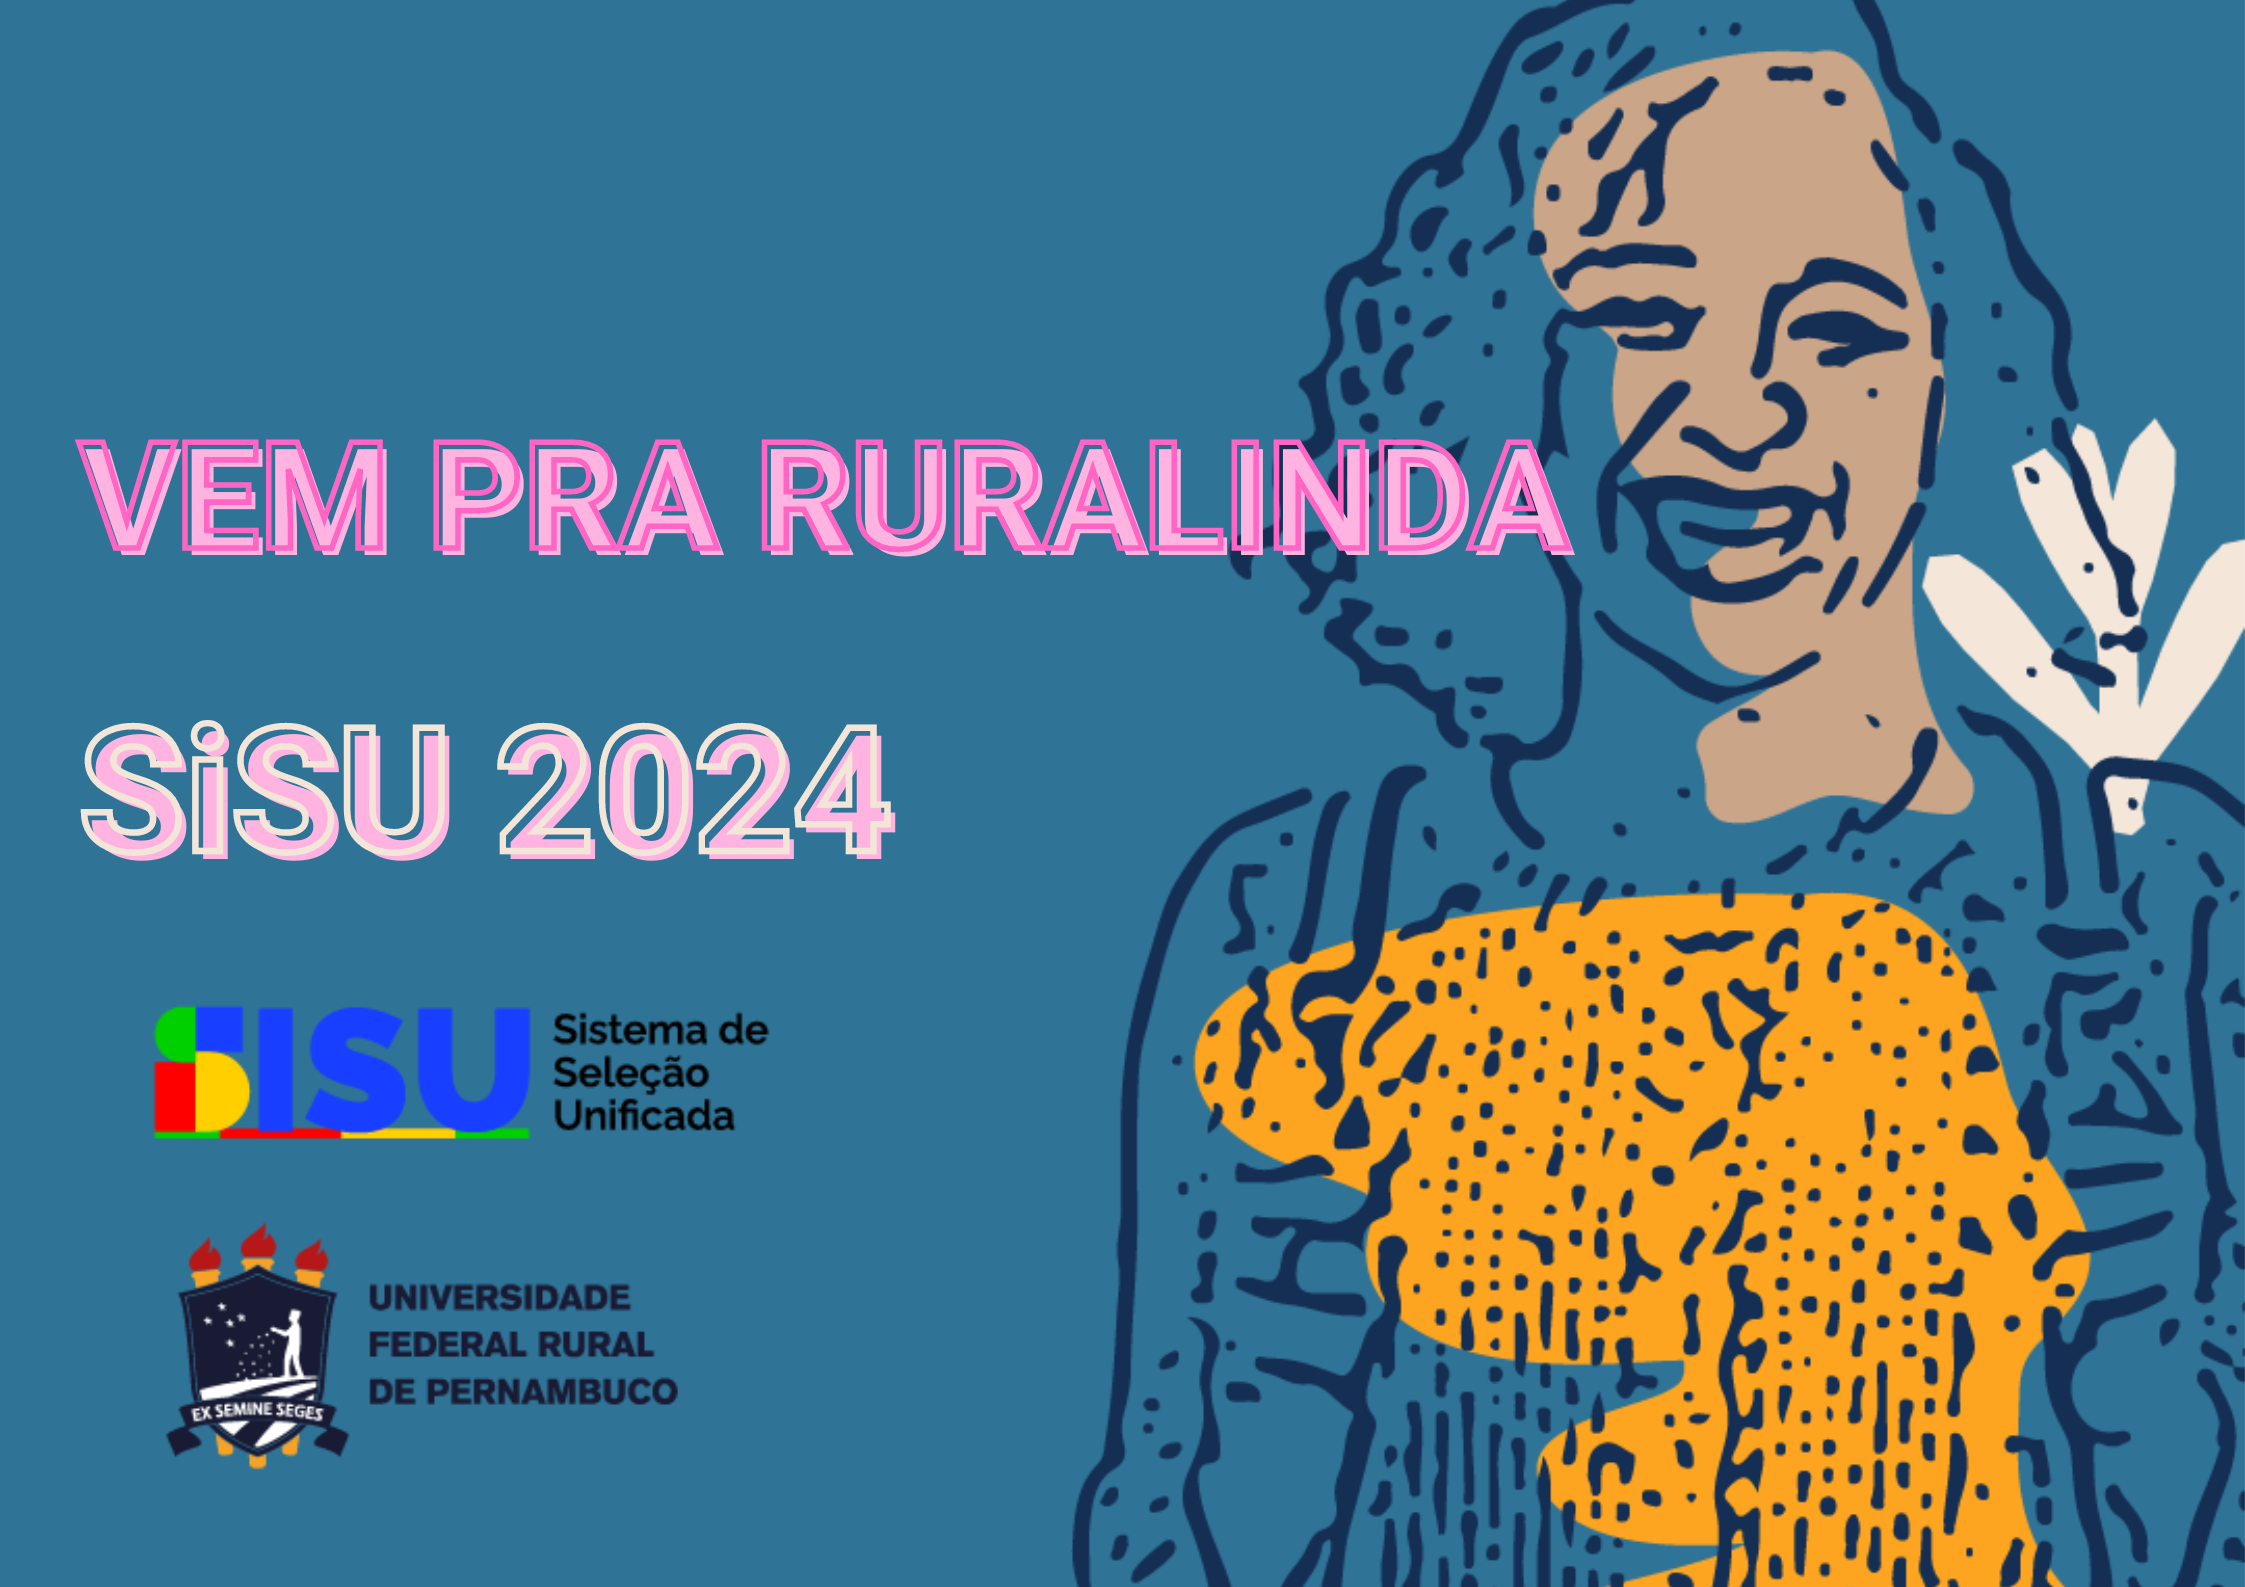 cartaz de divulgação com fundo azul e silhueta/desenho de mulher sorrindo com a frase Vem pra Ruralinda